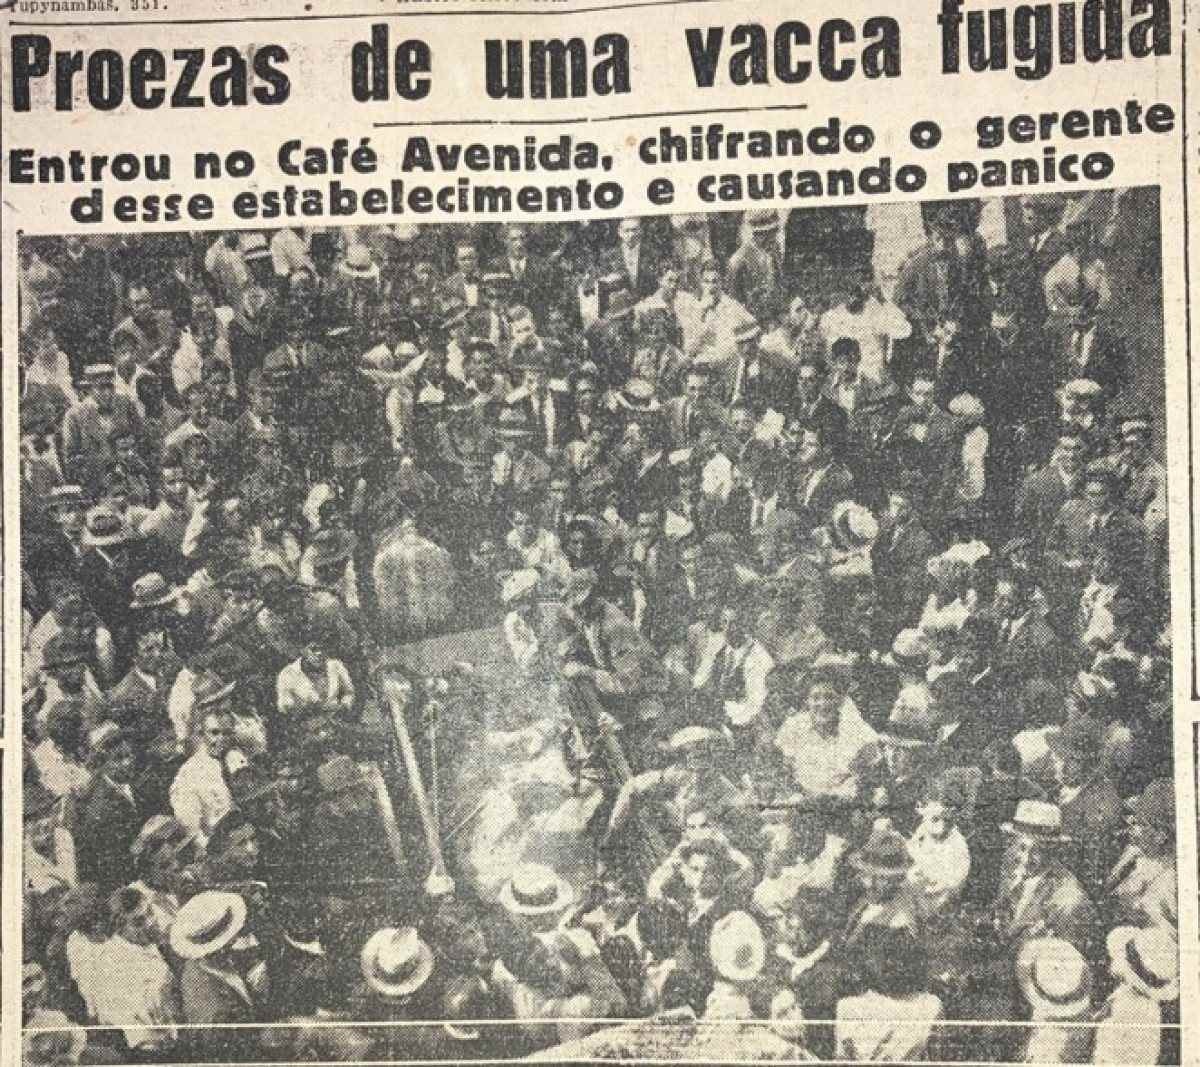 Estado de Minas de 29 de maio de 1936